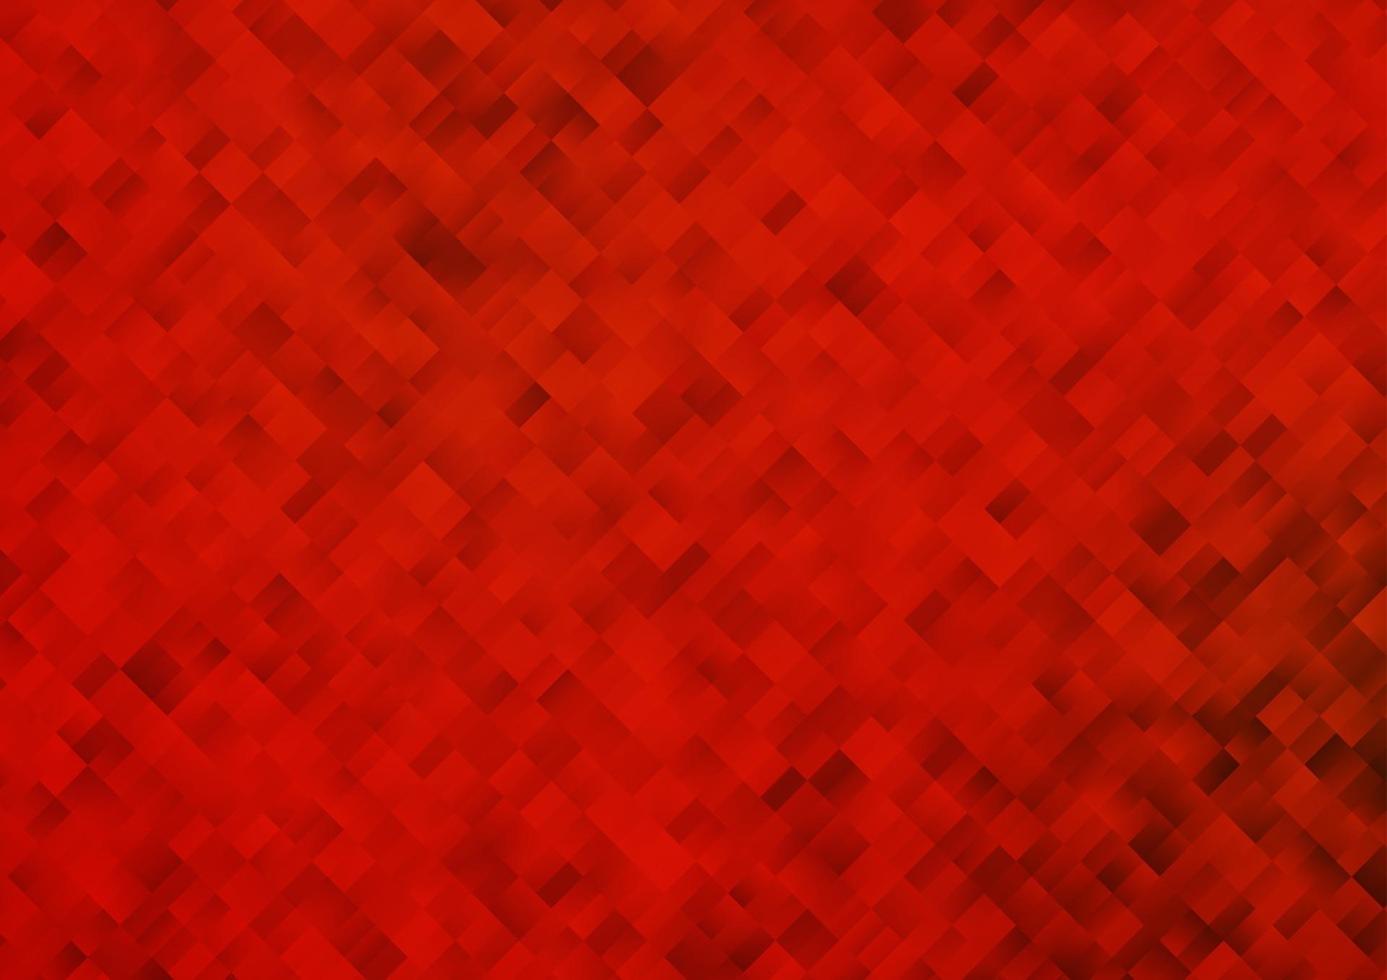 textura de vector rojo claro en estilo rectangular.